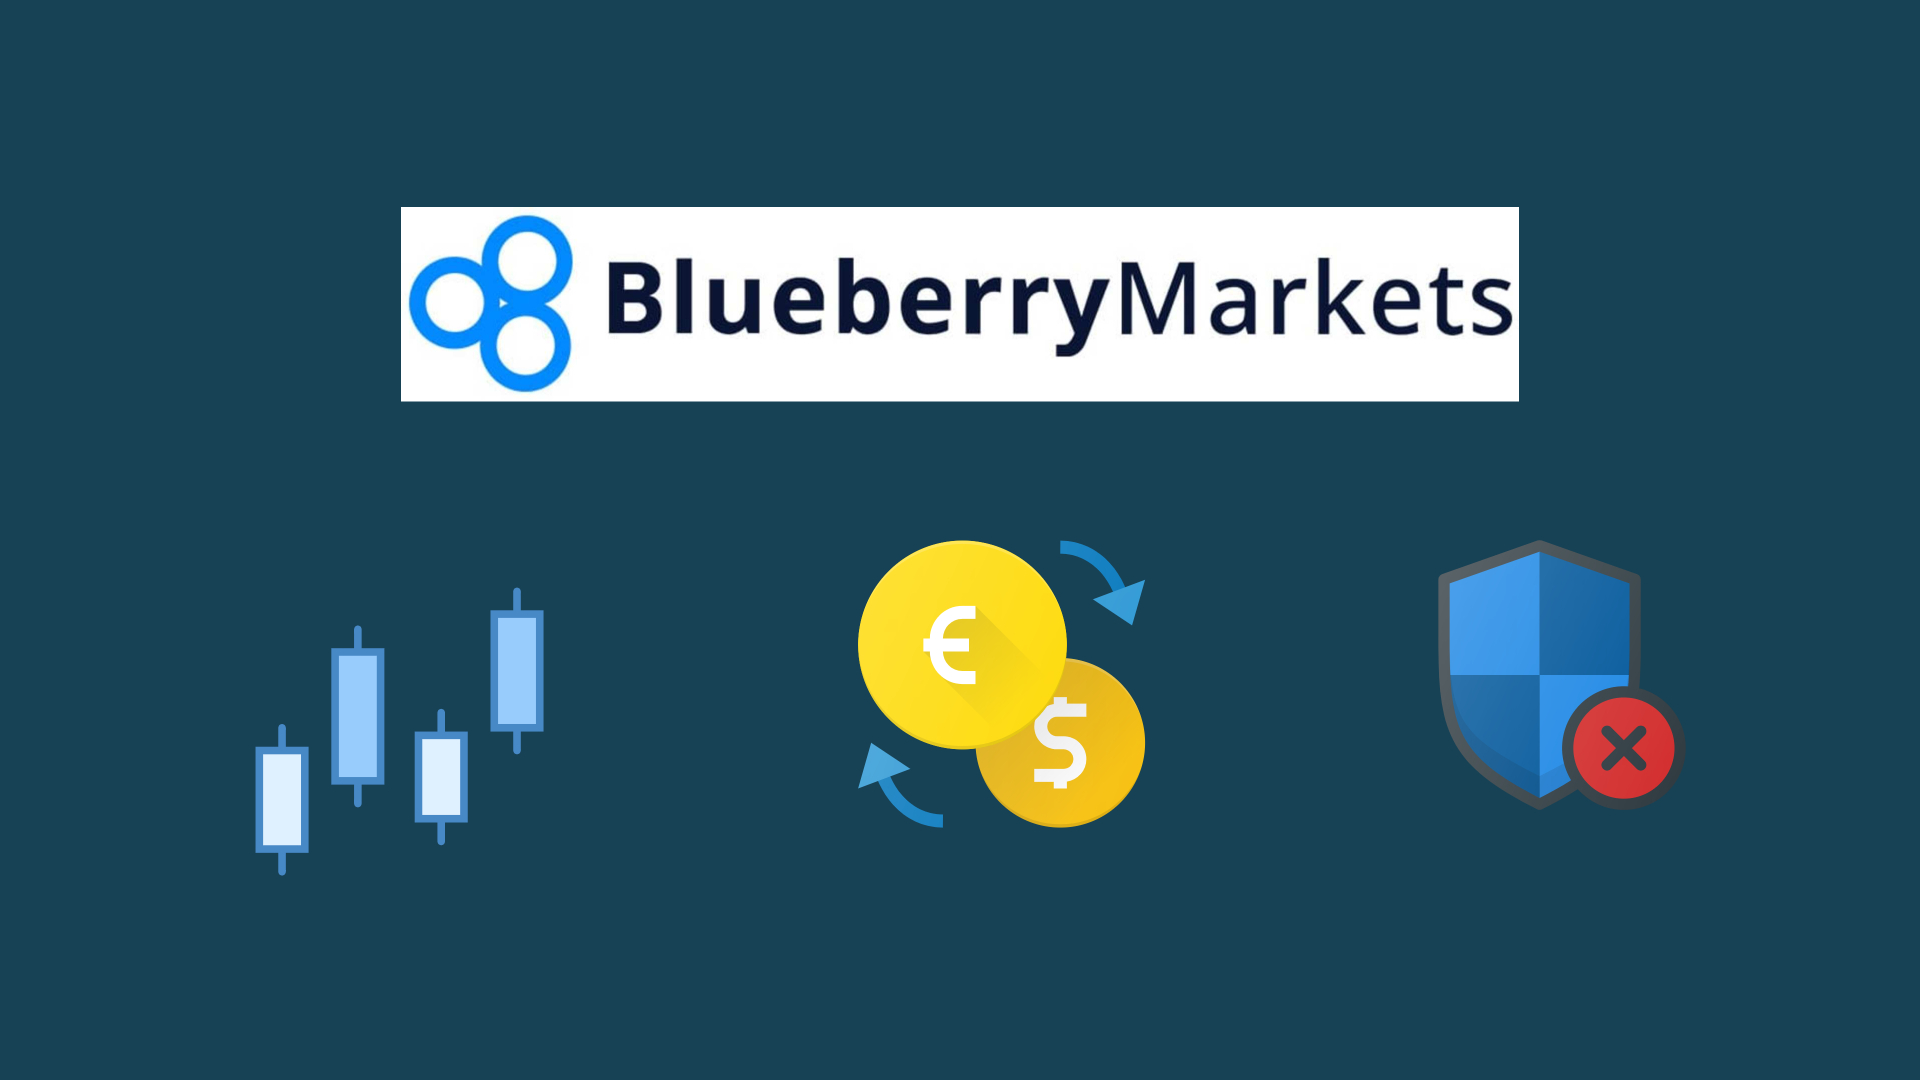 Blueberry markets vs ic markets